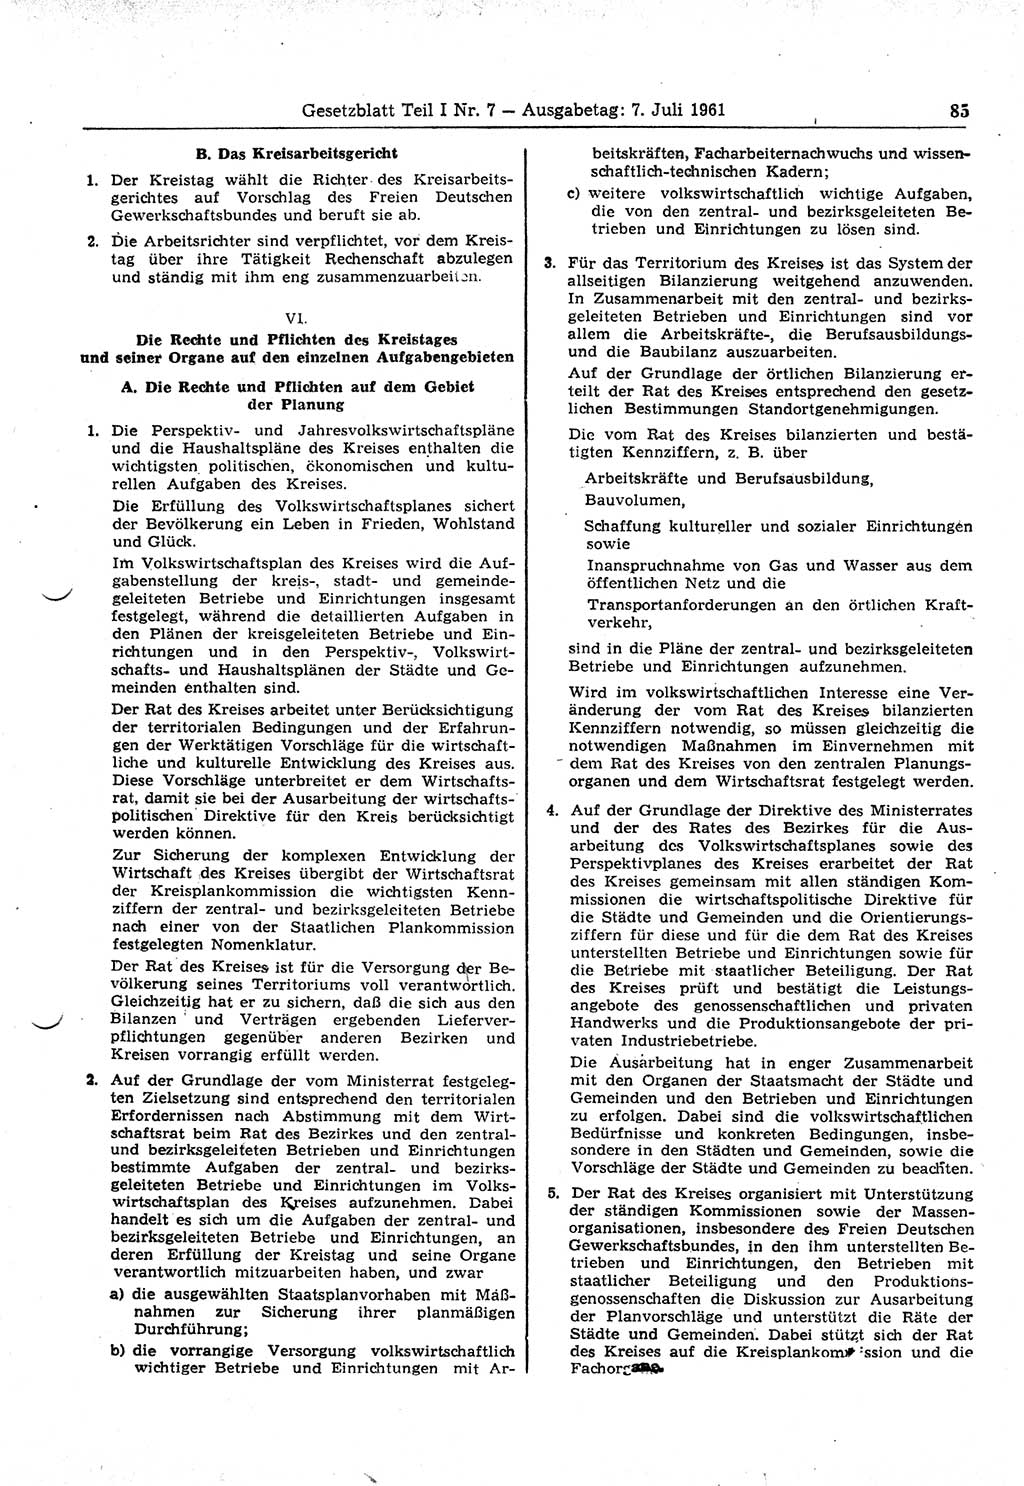 Gesetzblatt (GBl.) der Deutschen Demokratischen Republik (DDR) Teil Ⅰ 1961, Seite 85 (GBl. DDR Ⅰ 1961, S. 85)